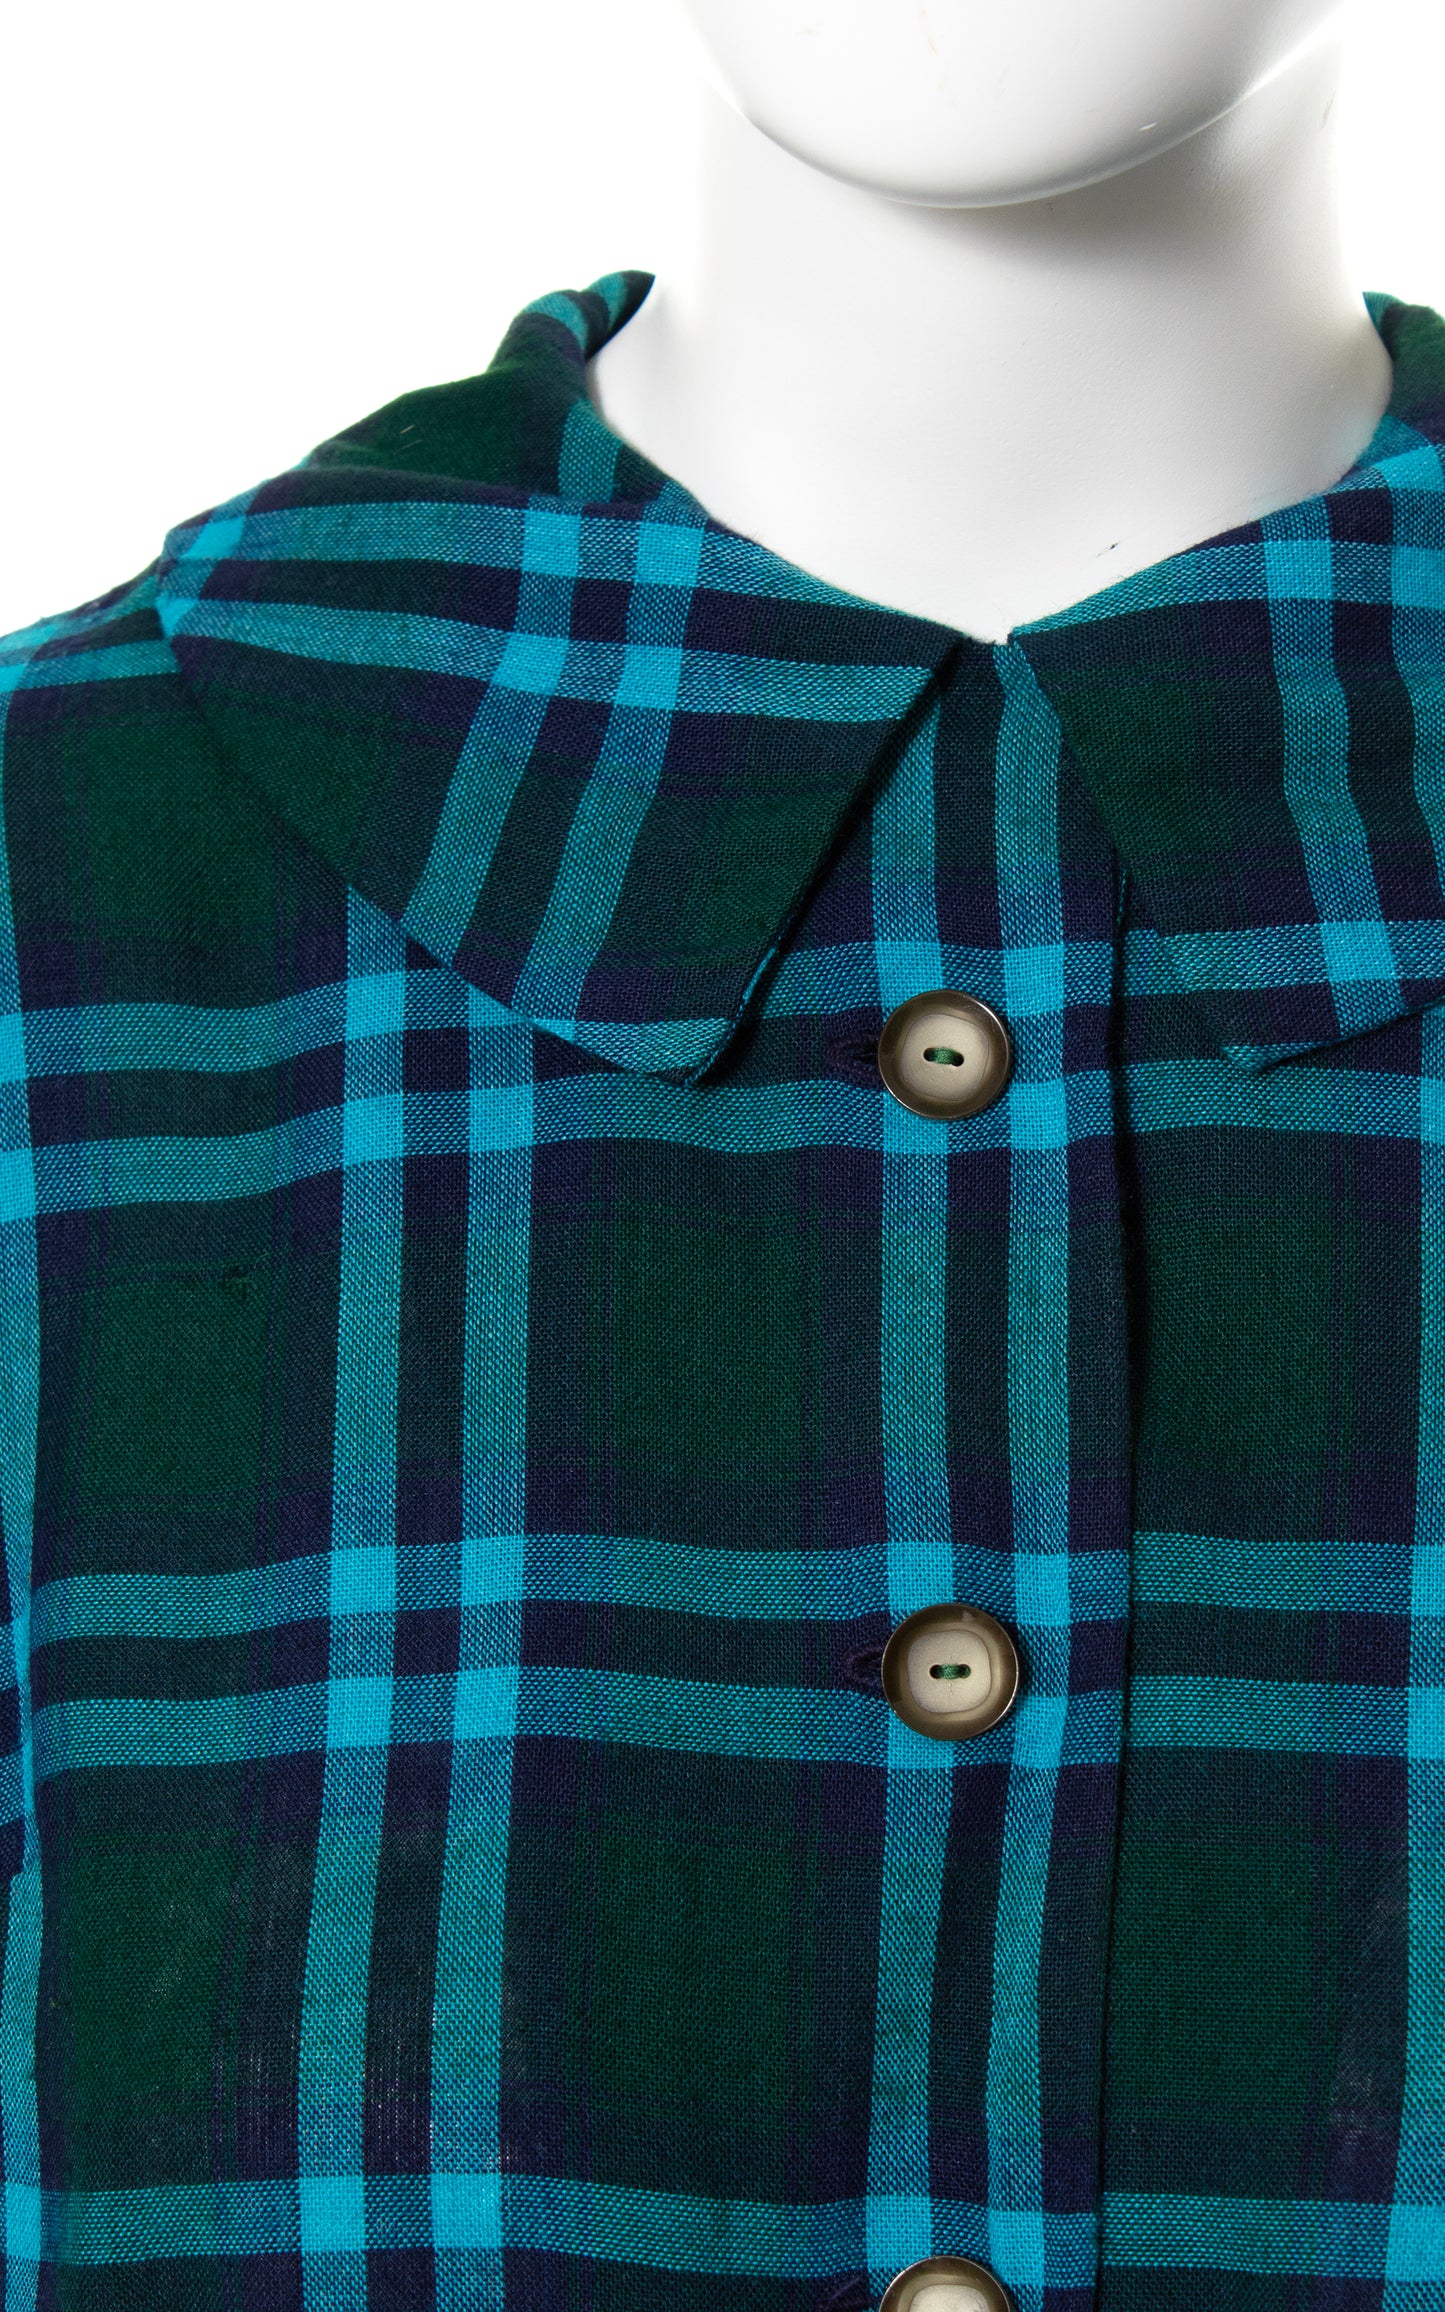 1950s Plaid Wool Shirtwaist Dress | x-small/small